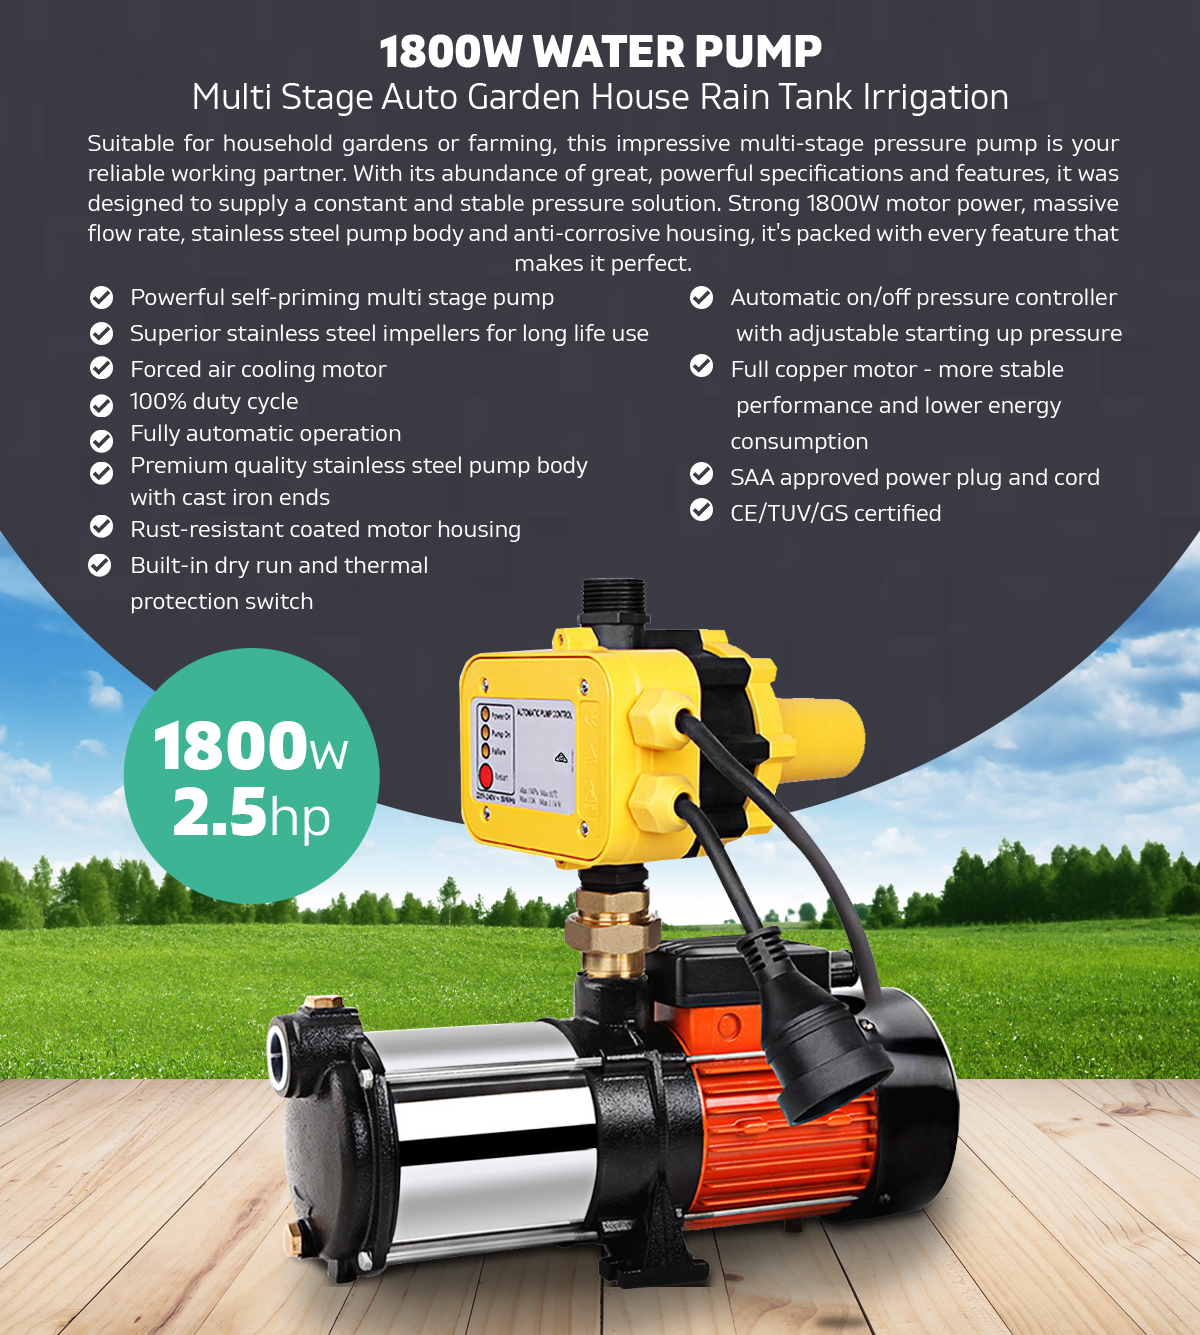 1800W Water Pressure Pump Multi Stage Auto House Garden Rain Tank Irrigation